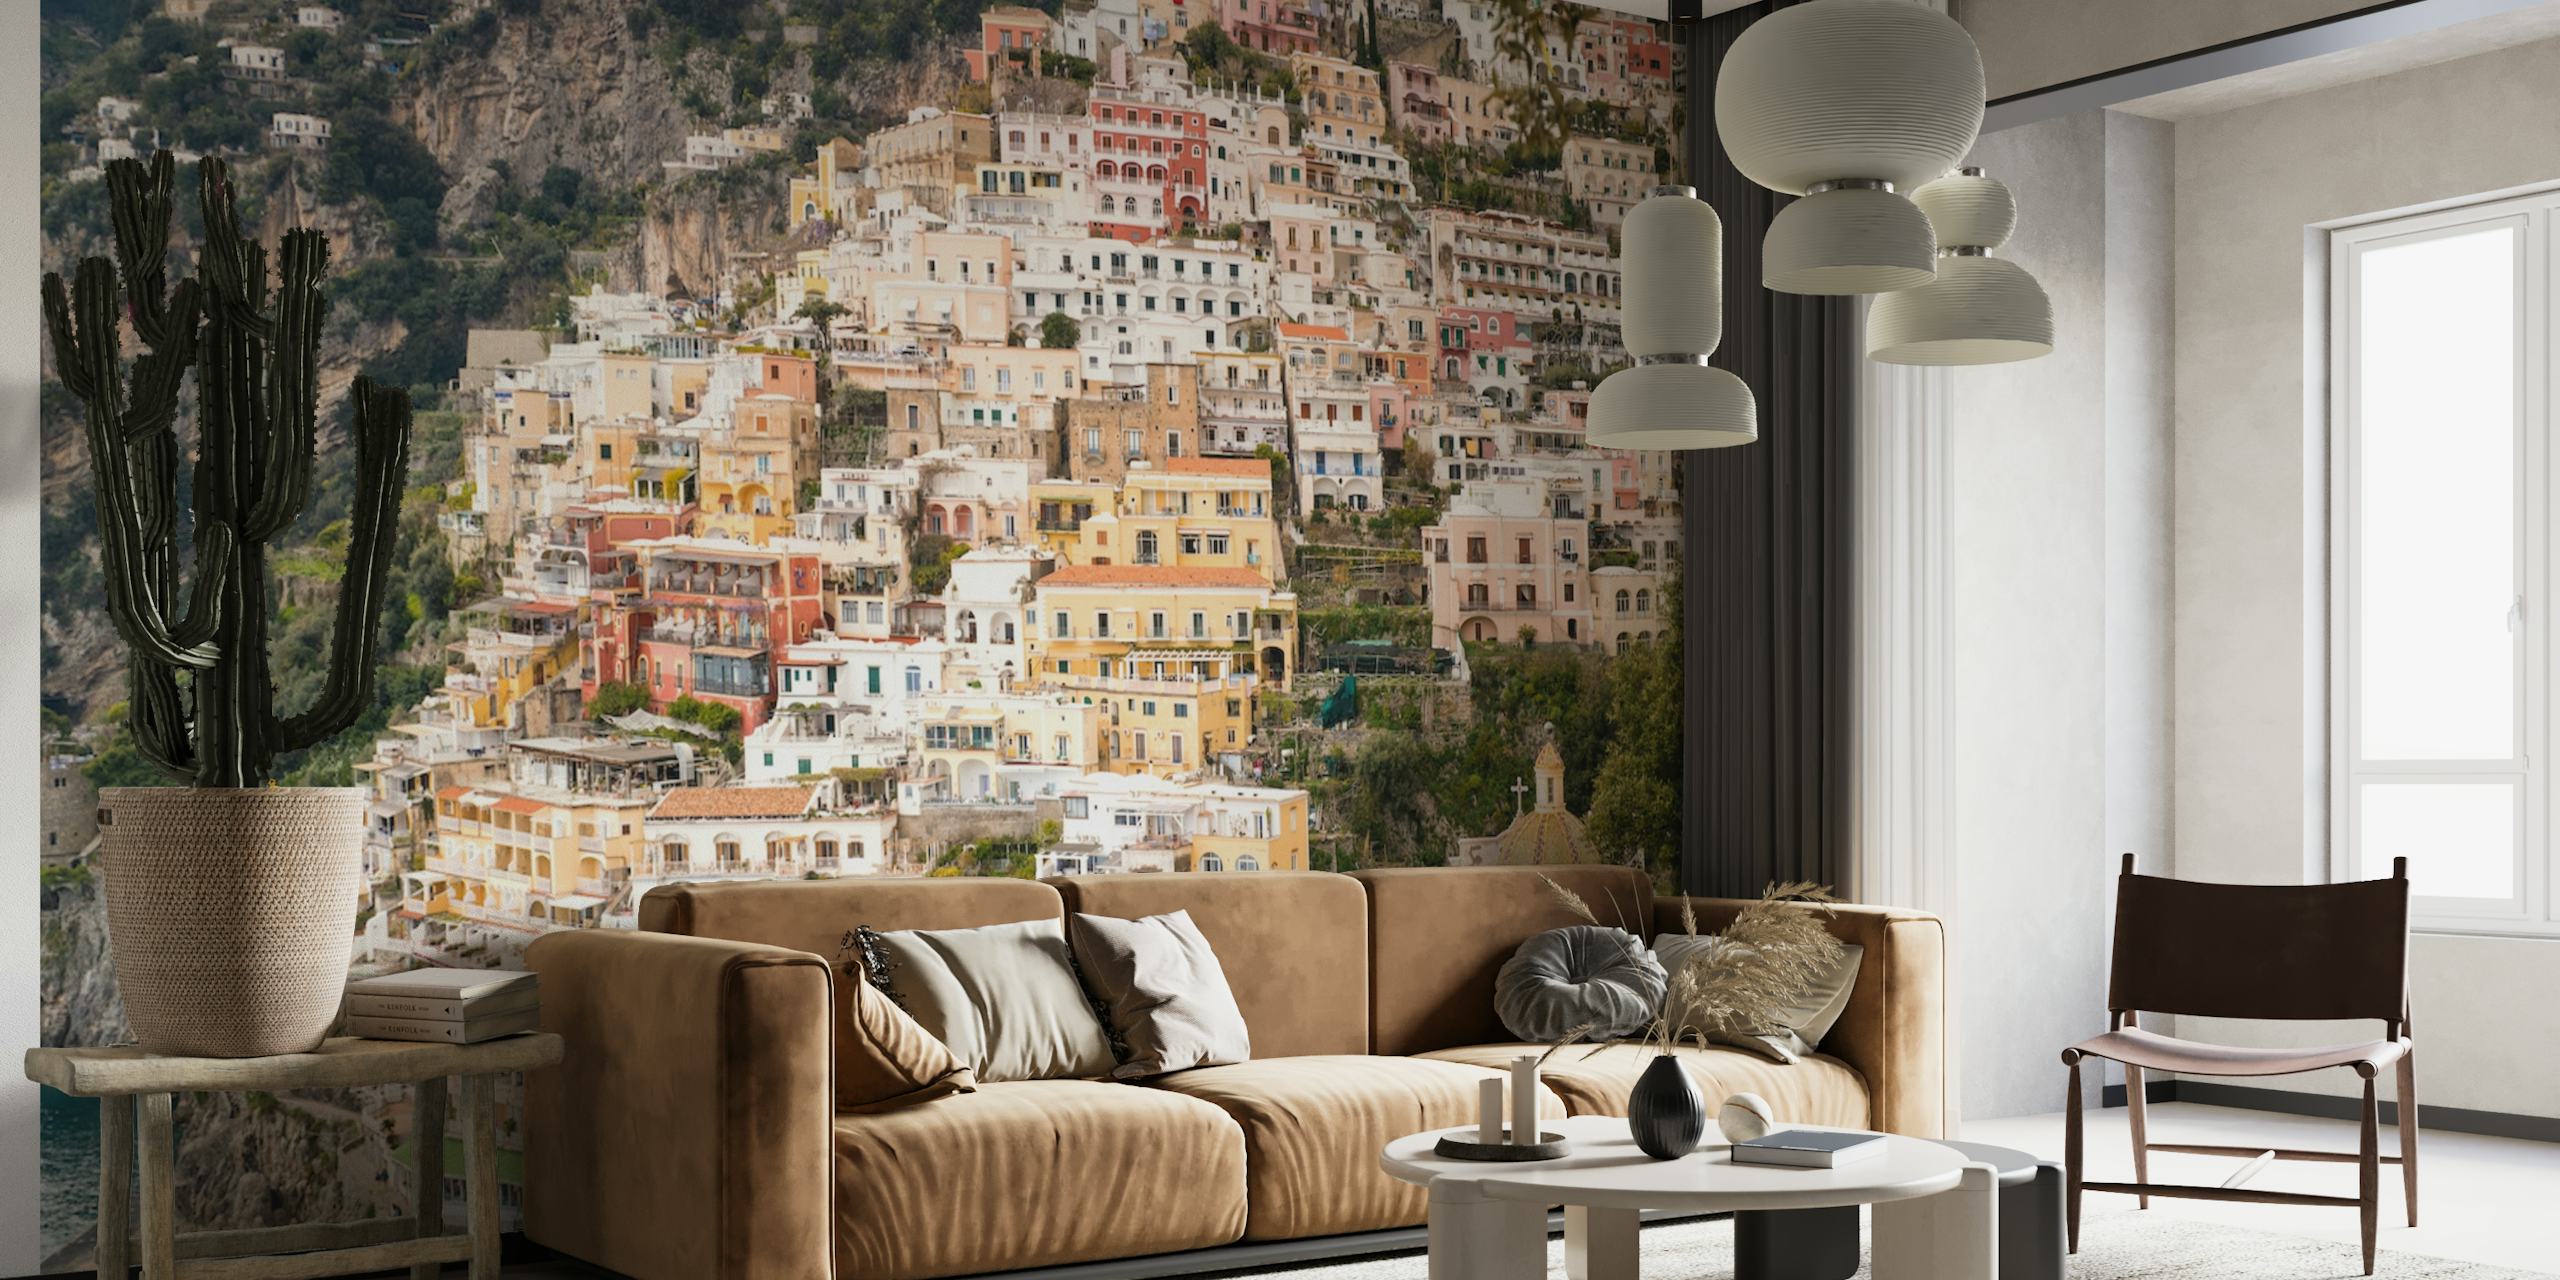 Zidni mural na obali Positano Amalfi sa šarenim zgradama i mediteranskim ugođajem